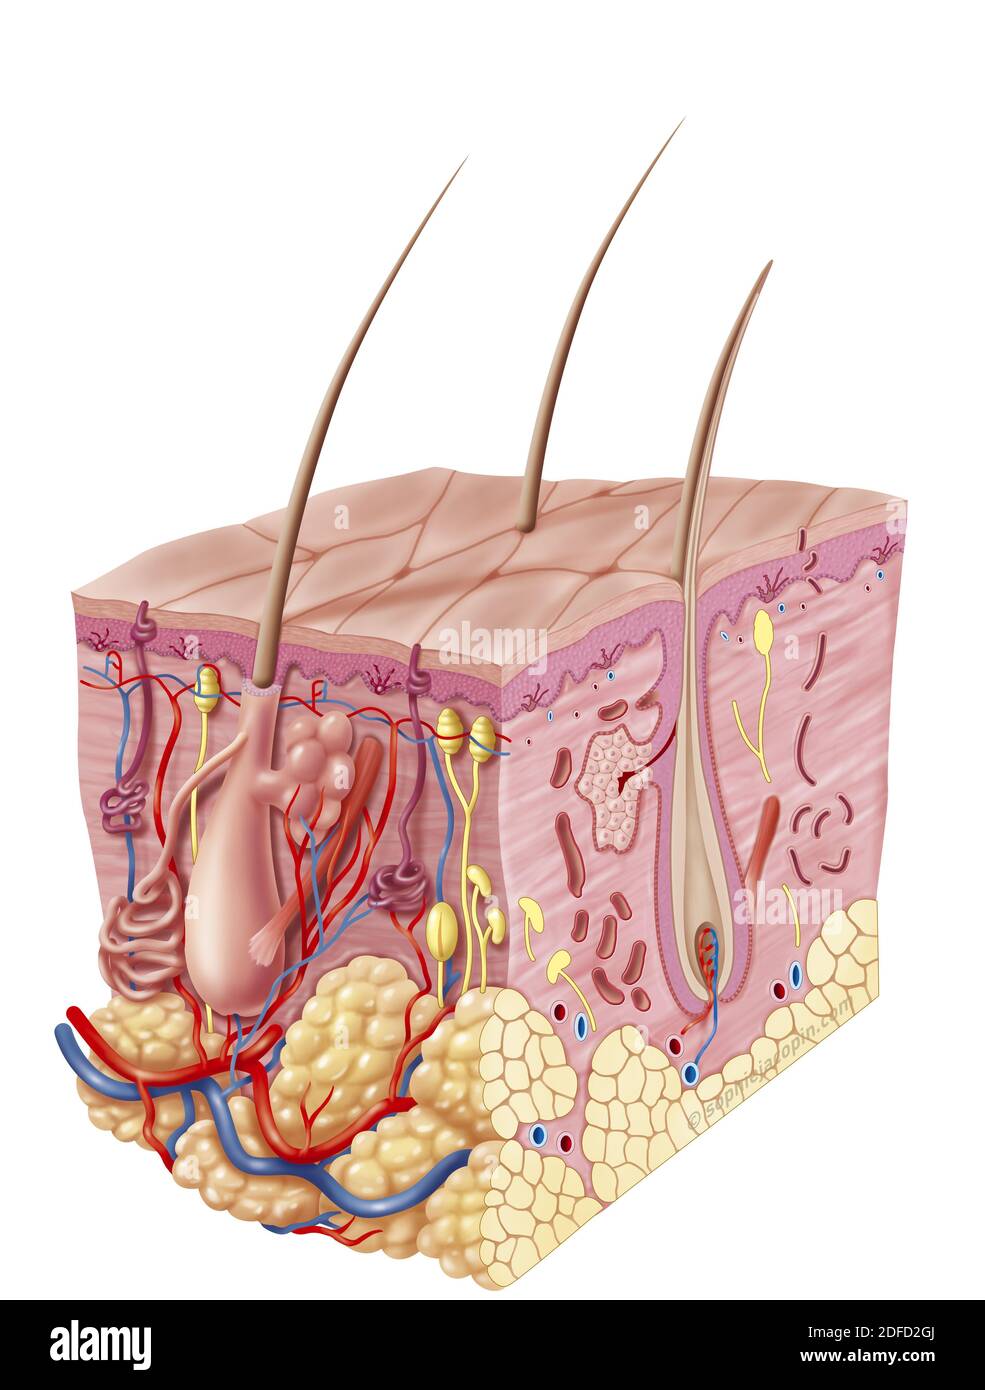 Estructura de la piel del adulto, anatomía, apéndices del sistema integumentario. Esta ilustración representa una vista de sección 3D de 3/4 de la anatomía y estructura Foto de stock